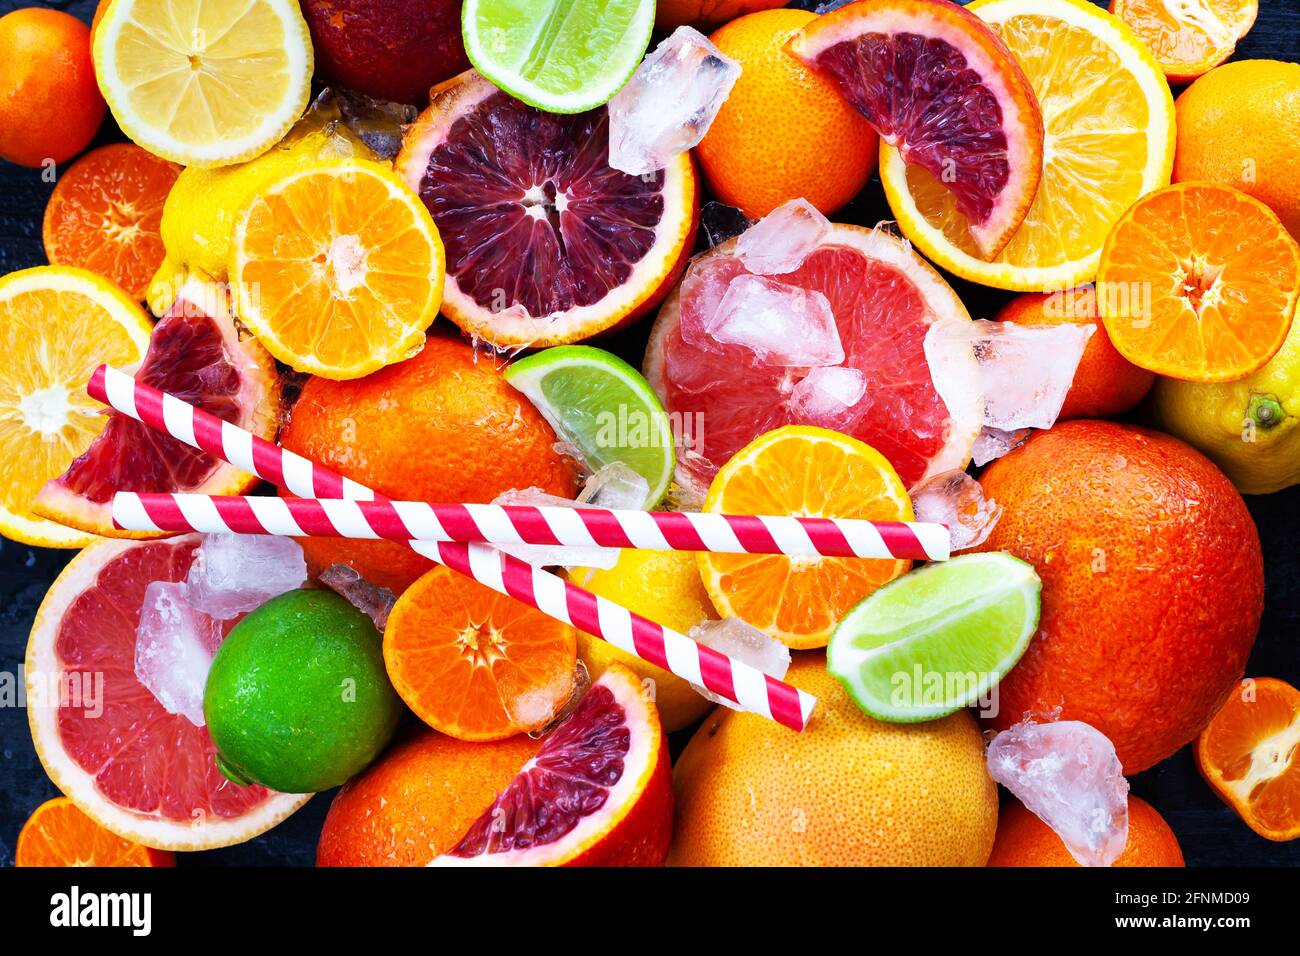 Primo piano di agrumi freschi e succosi - arance, mandarini, limoni e lime, vista dall'alto Foto Stock